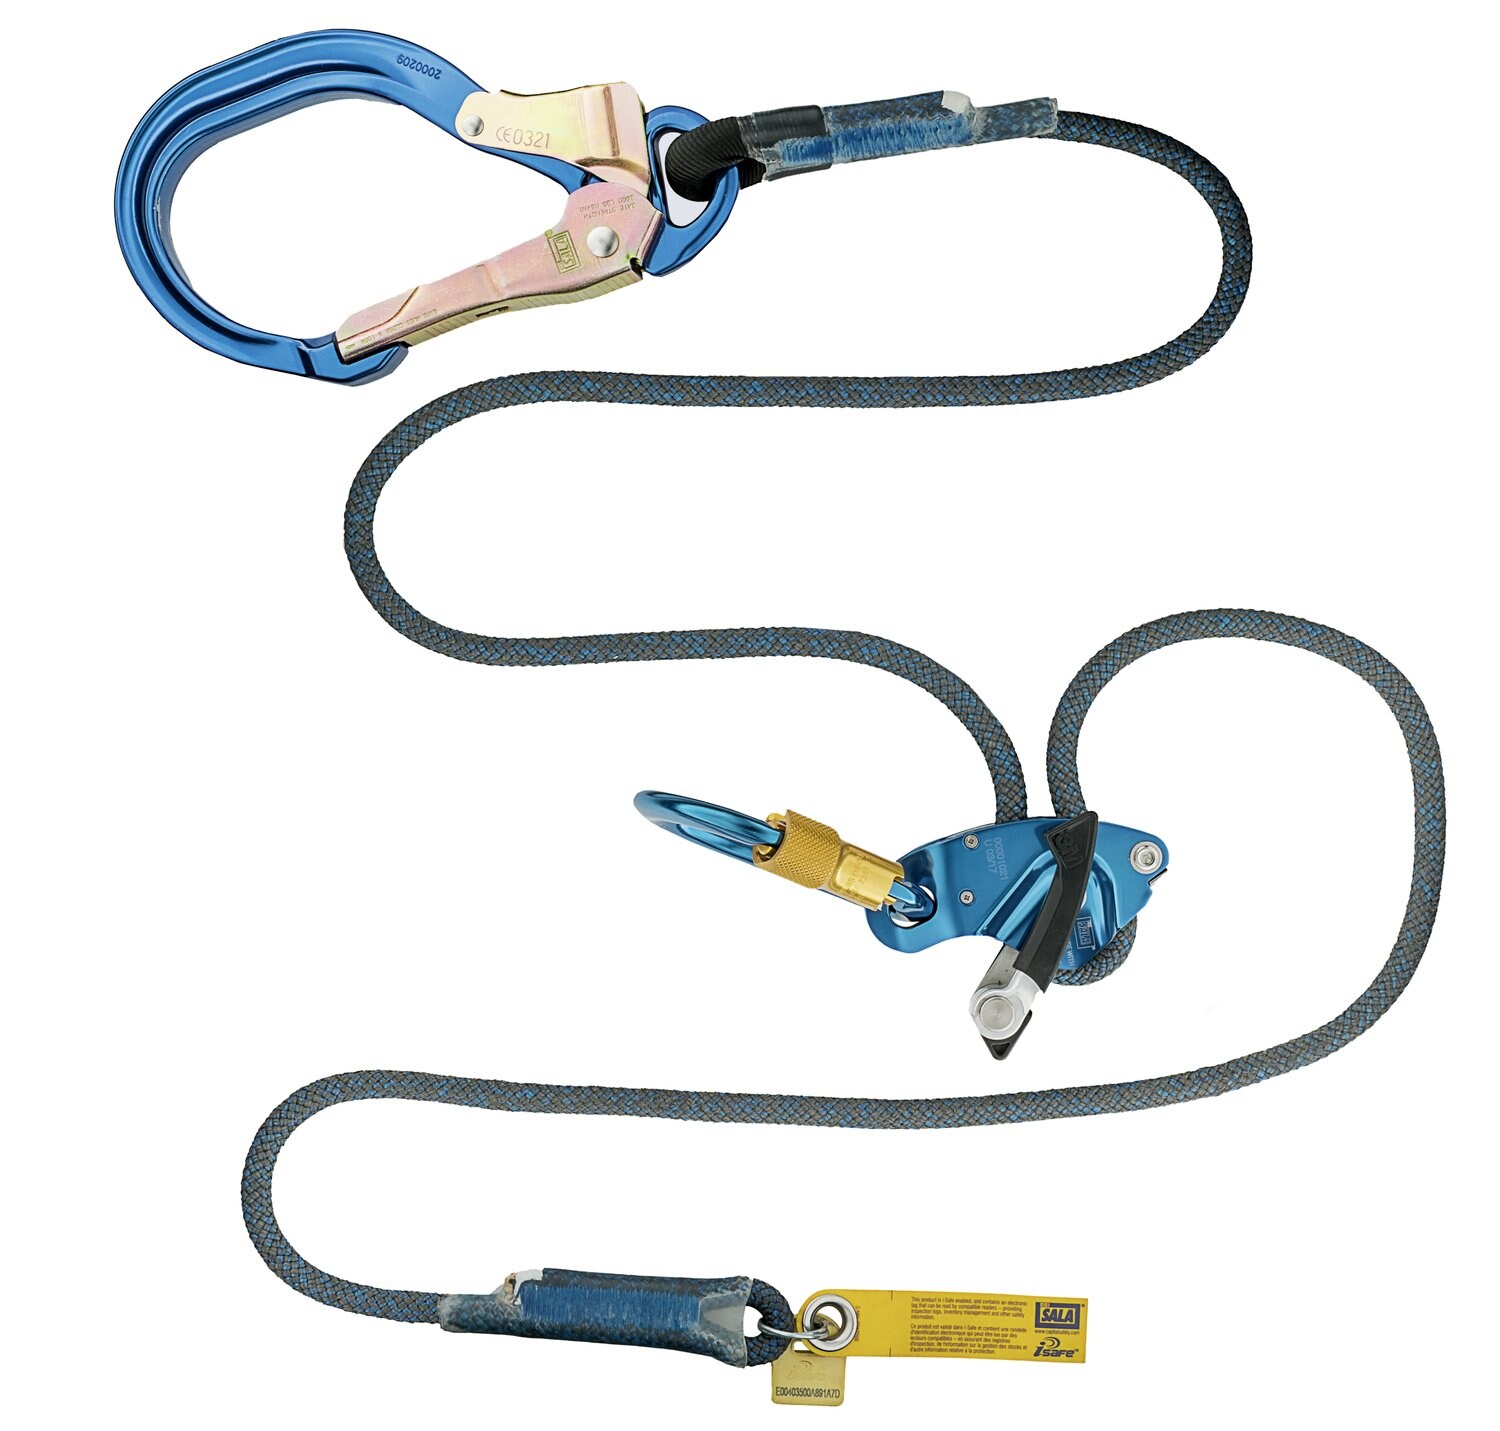 7100157043 - 3M DBI-SALA Rope Adjustable Positioning Lanyard, Trigger, 1234087